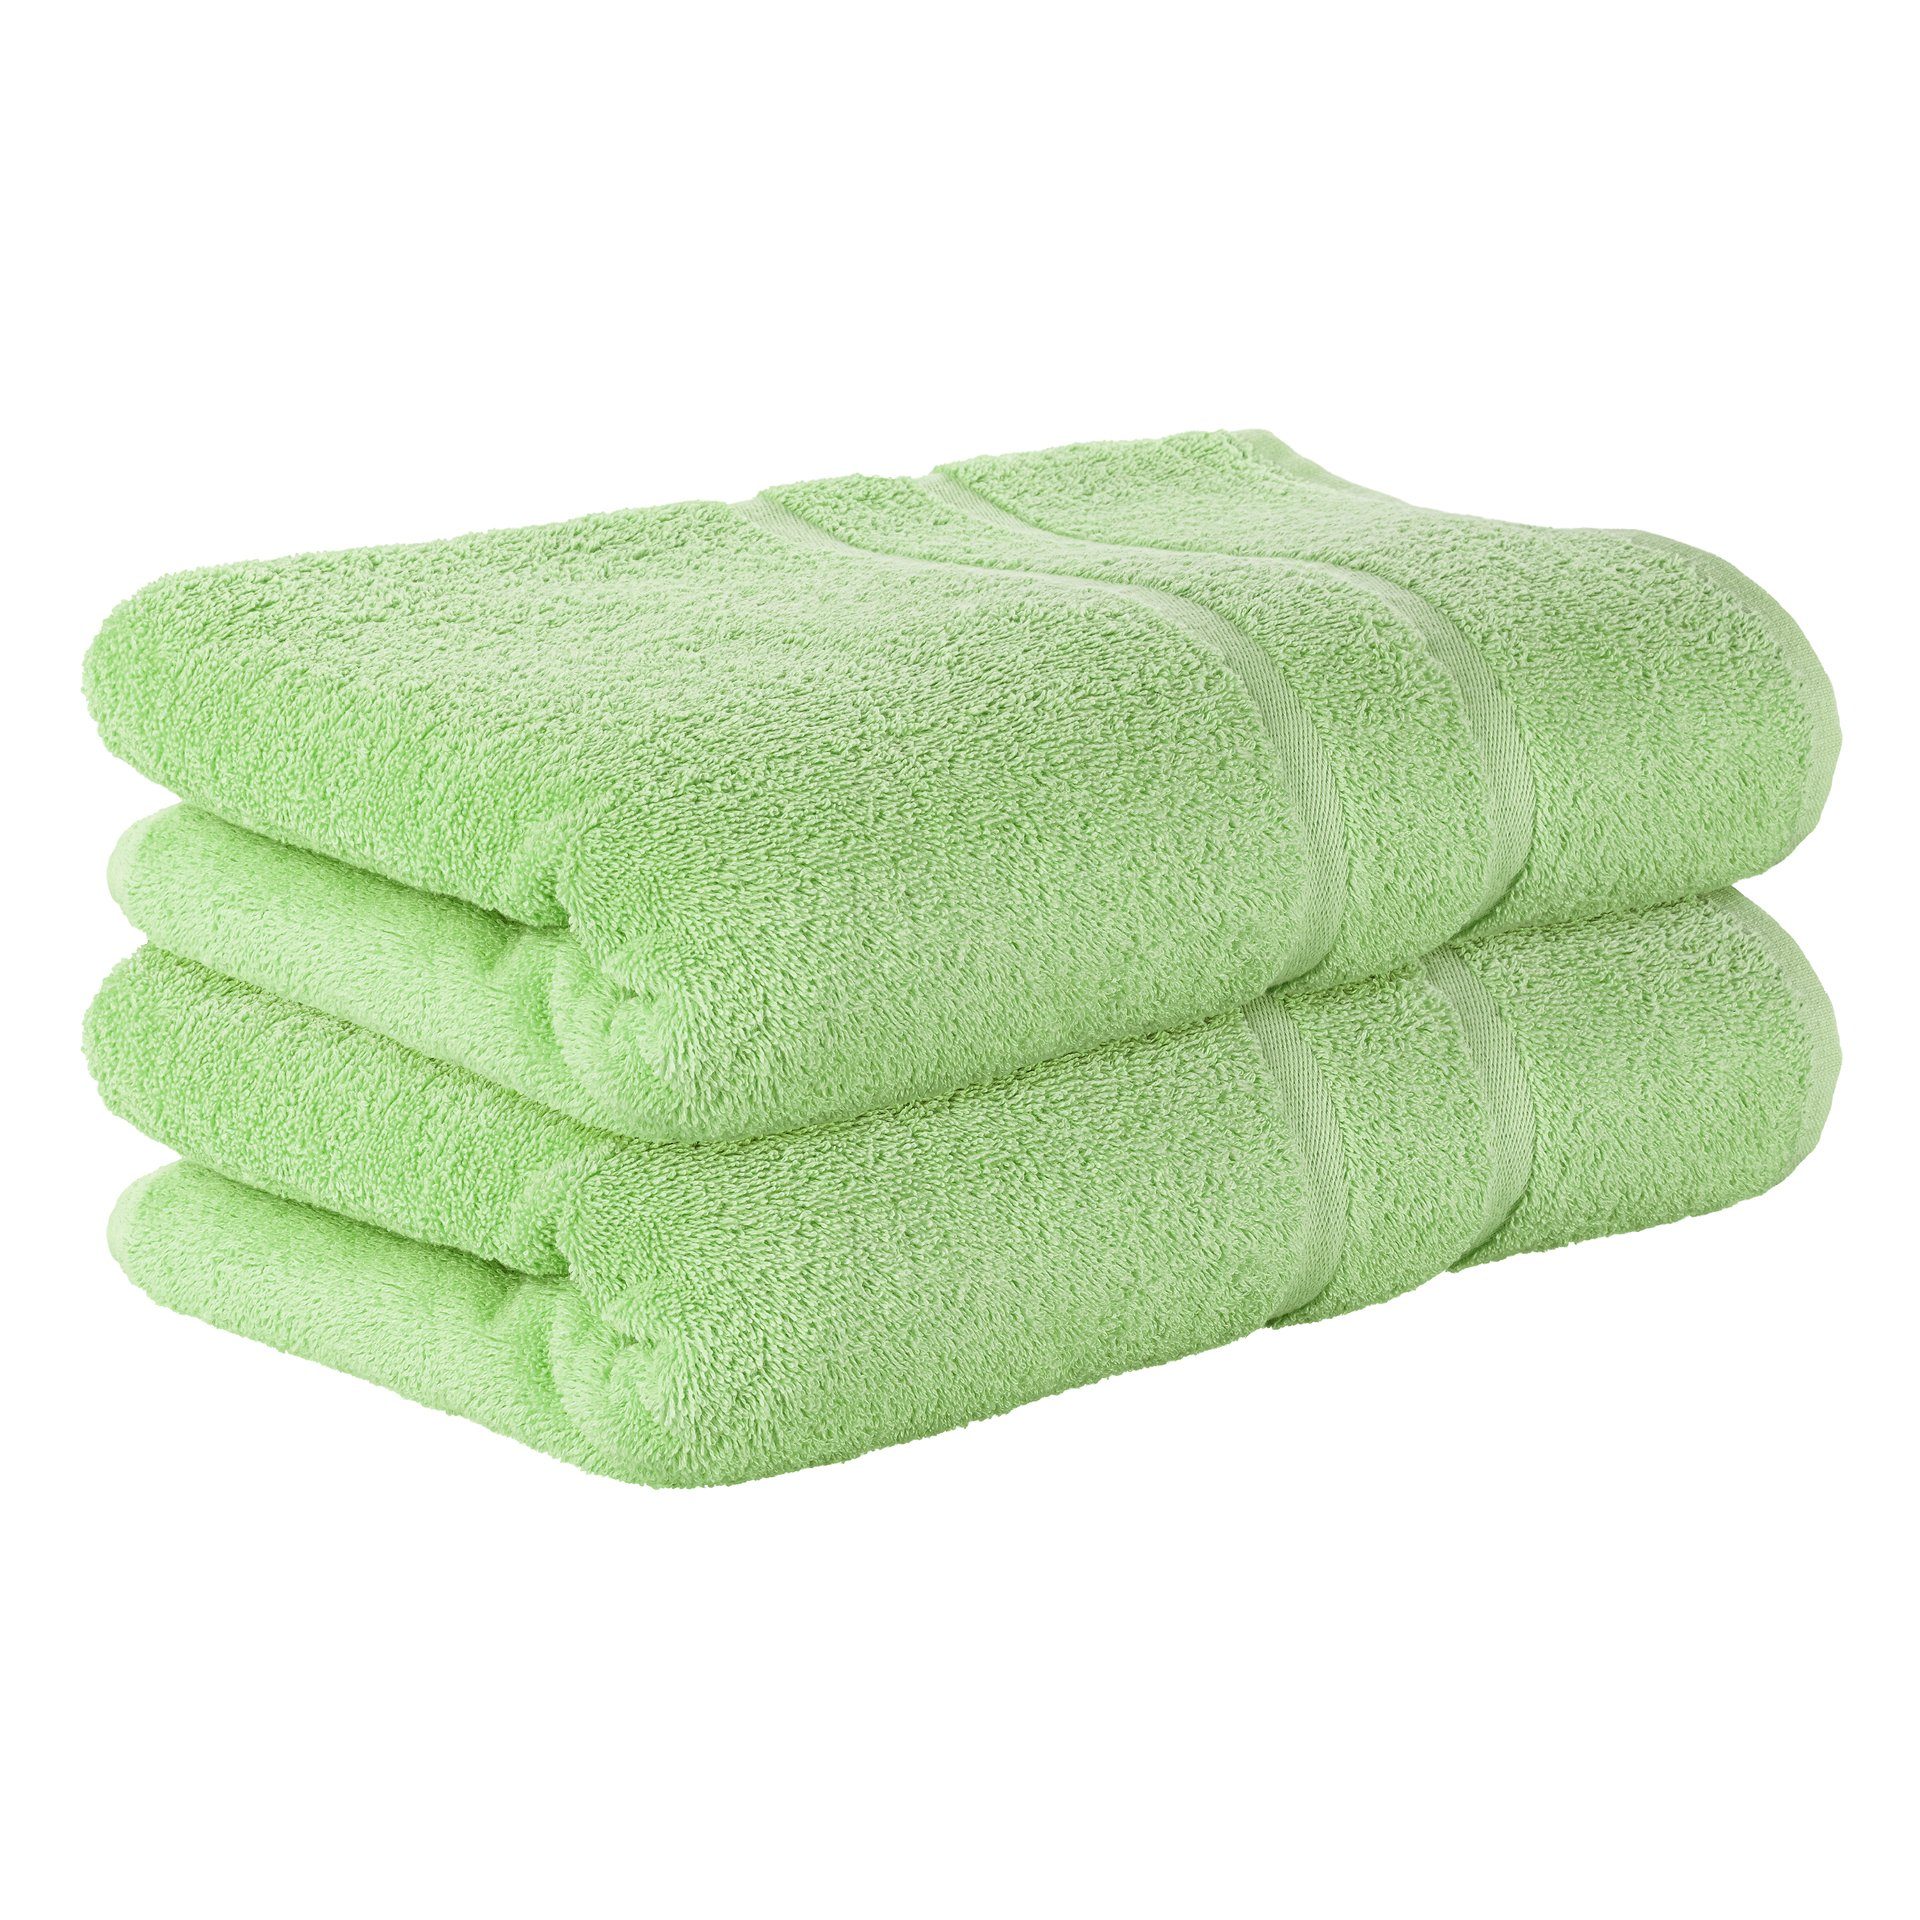 StickandShine Handtuch 2er Set Premium Frottee Handtuch 50x100 cm in 500g/m² aus 100% Baumwolle (2 Stück), 100% Baumwolle 500GSM Frottee Hellgrün